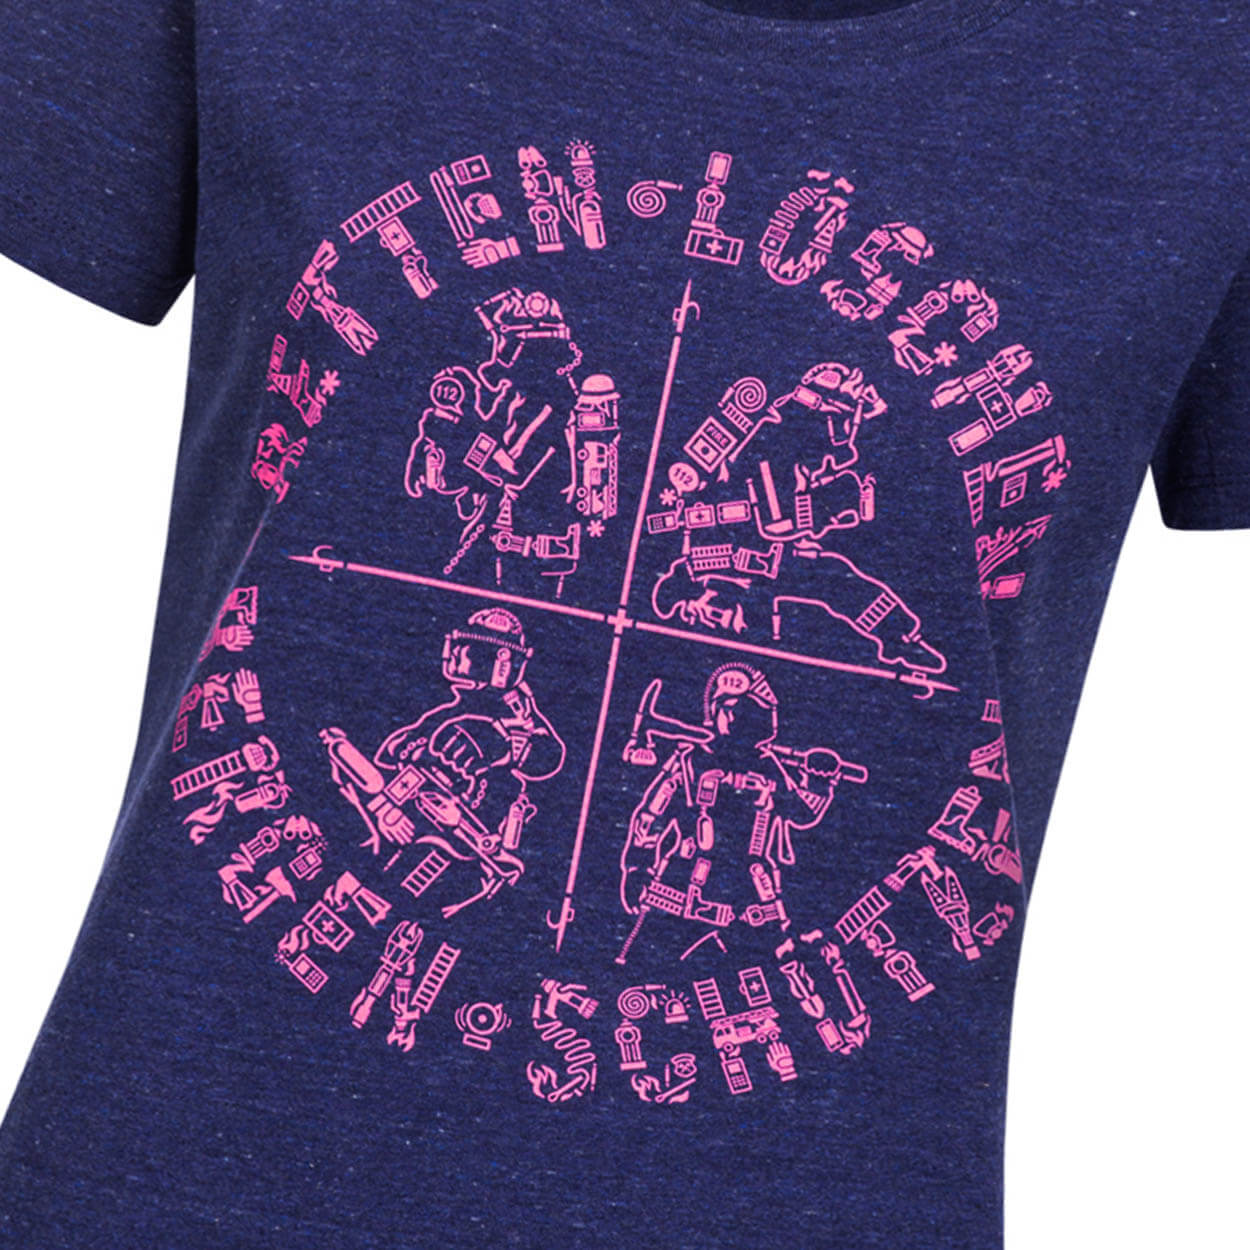 Retten Löschen Bergen Schützen -  Design Frauen T-Shirt blau